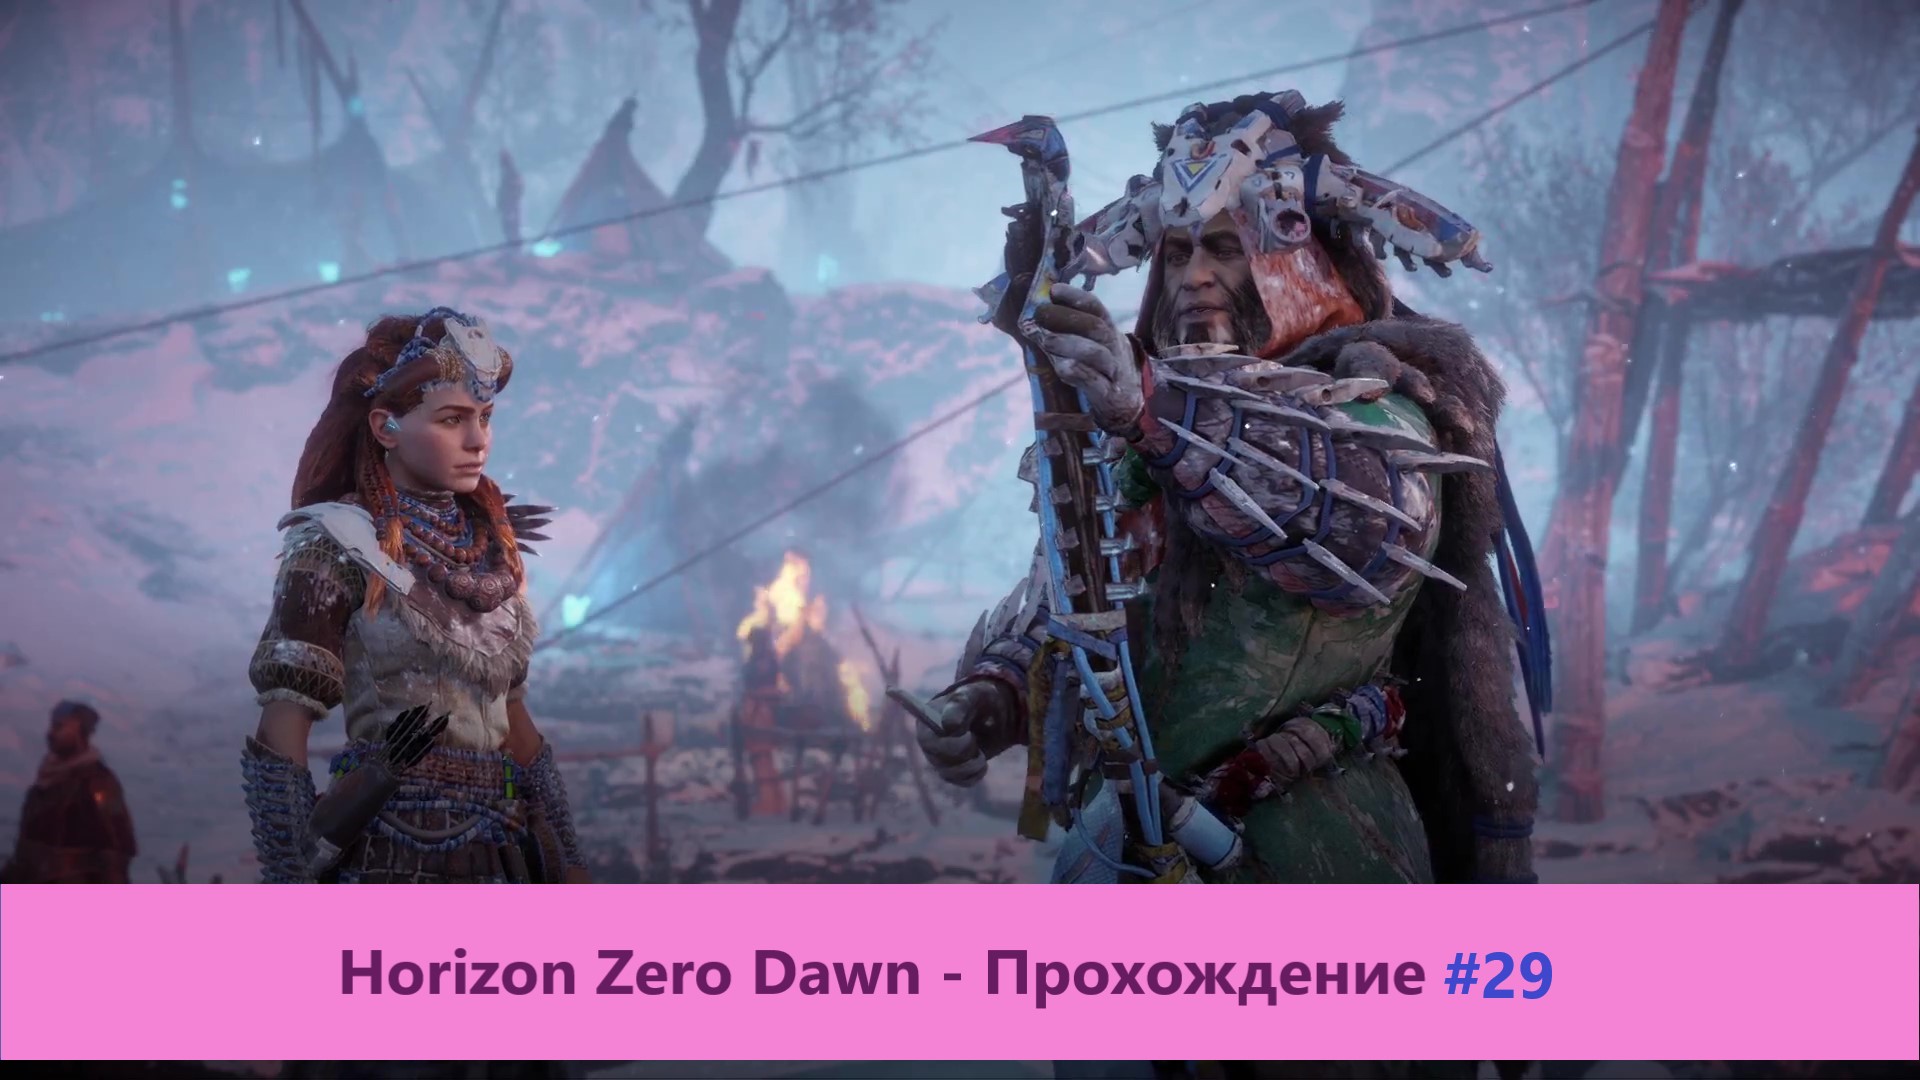 Horizon Zero Dawn - Прохождение #29